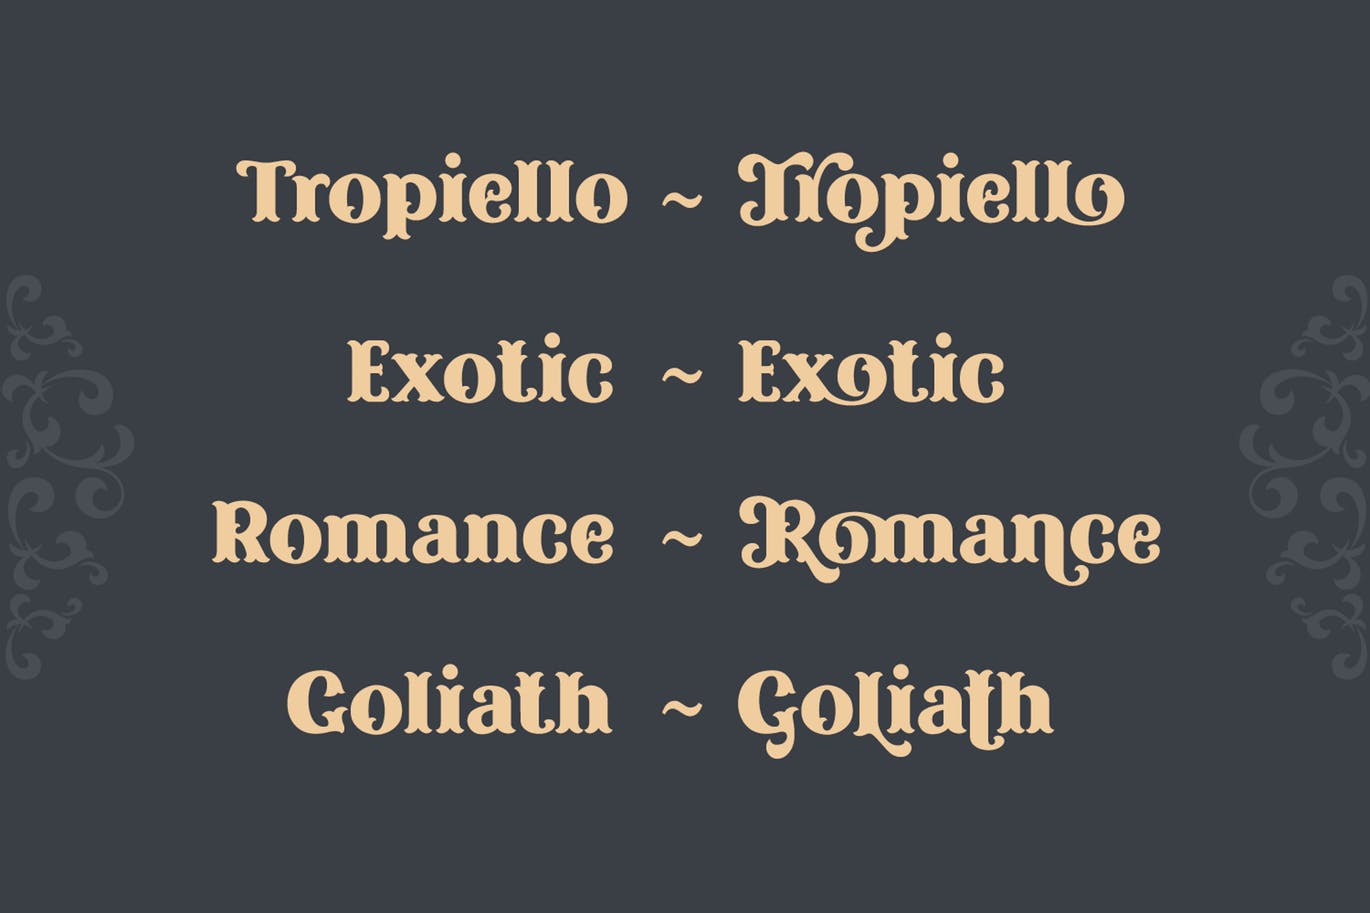 复古风格精美英文衬线装饰字体素材库精选下载 Tropiello Font插图(4)